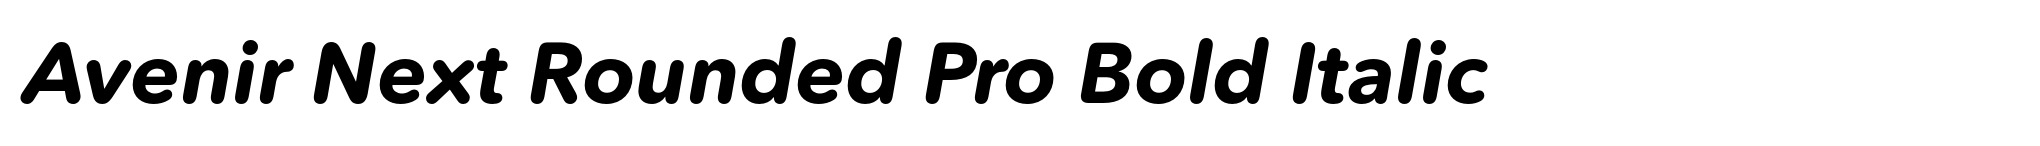 Avenir Next Rounded Pro Bold Italic image